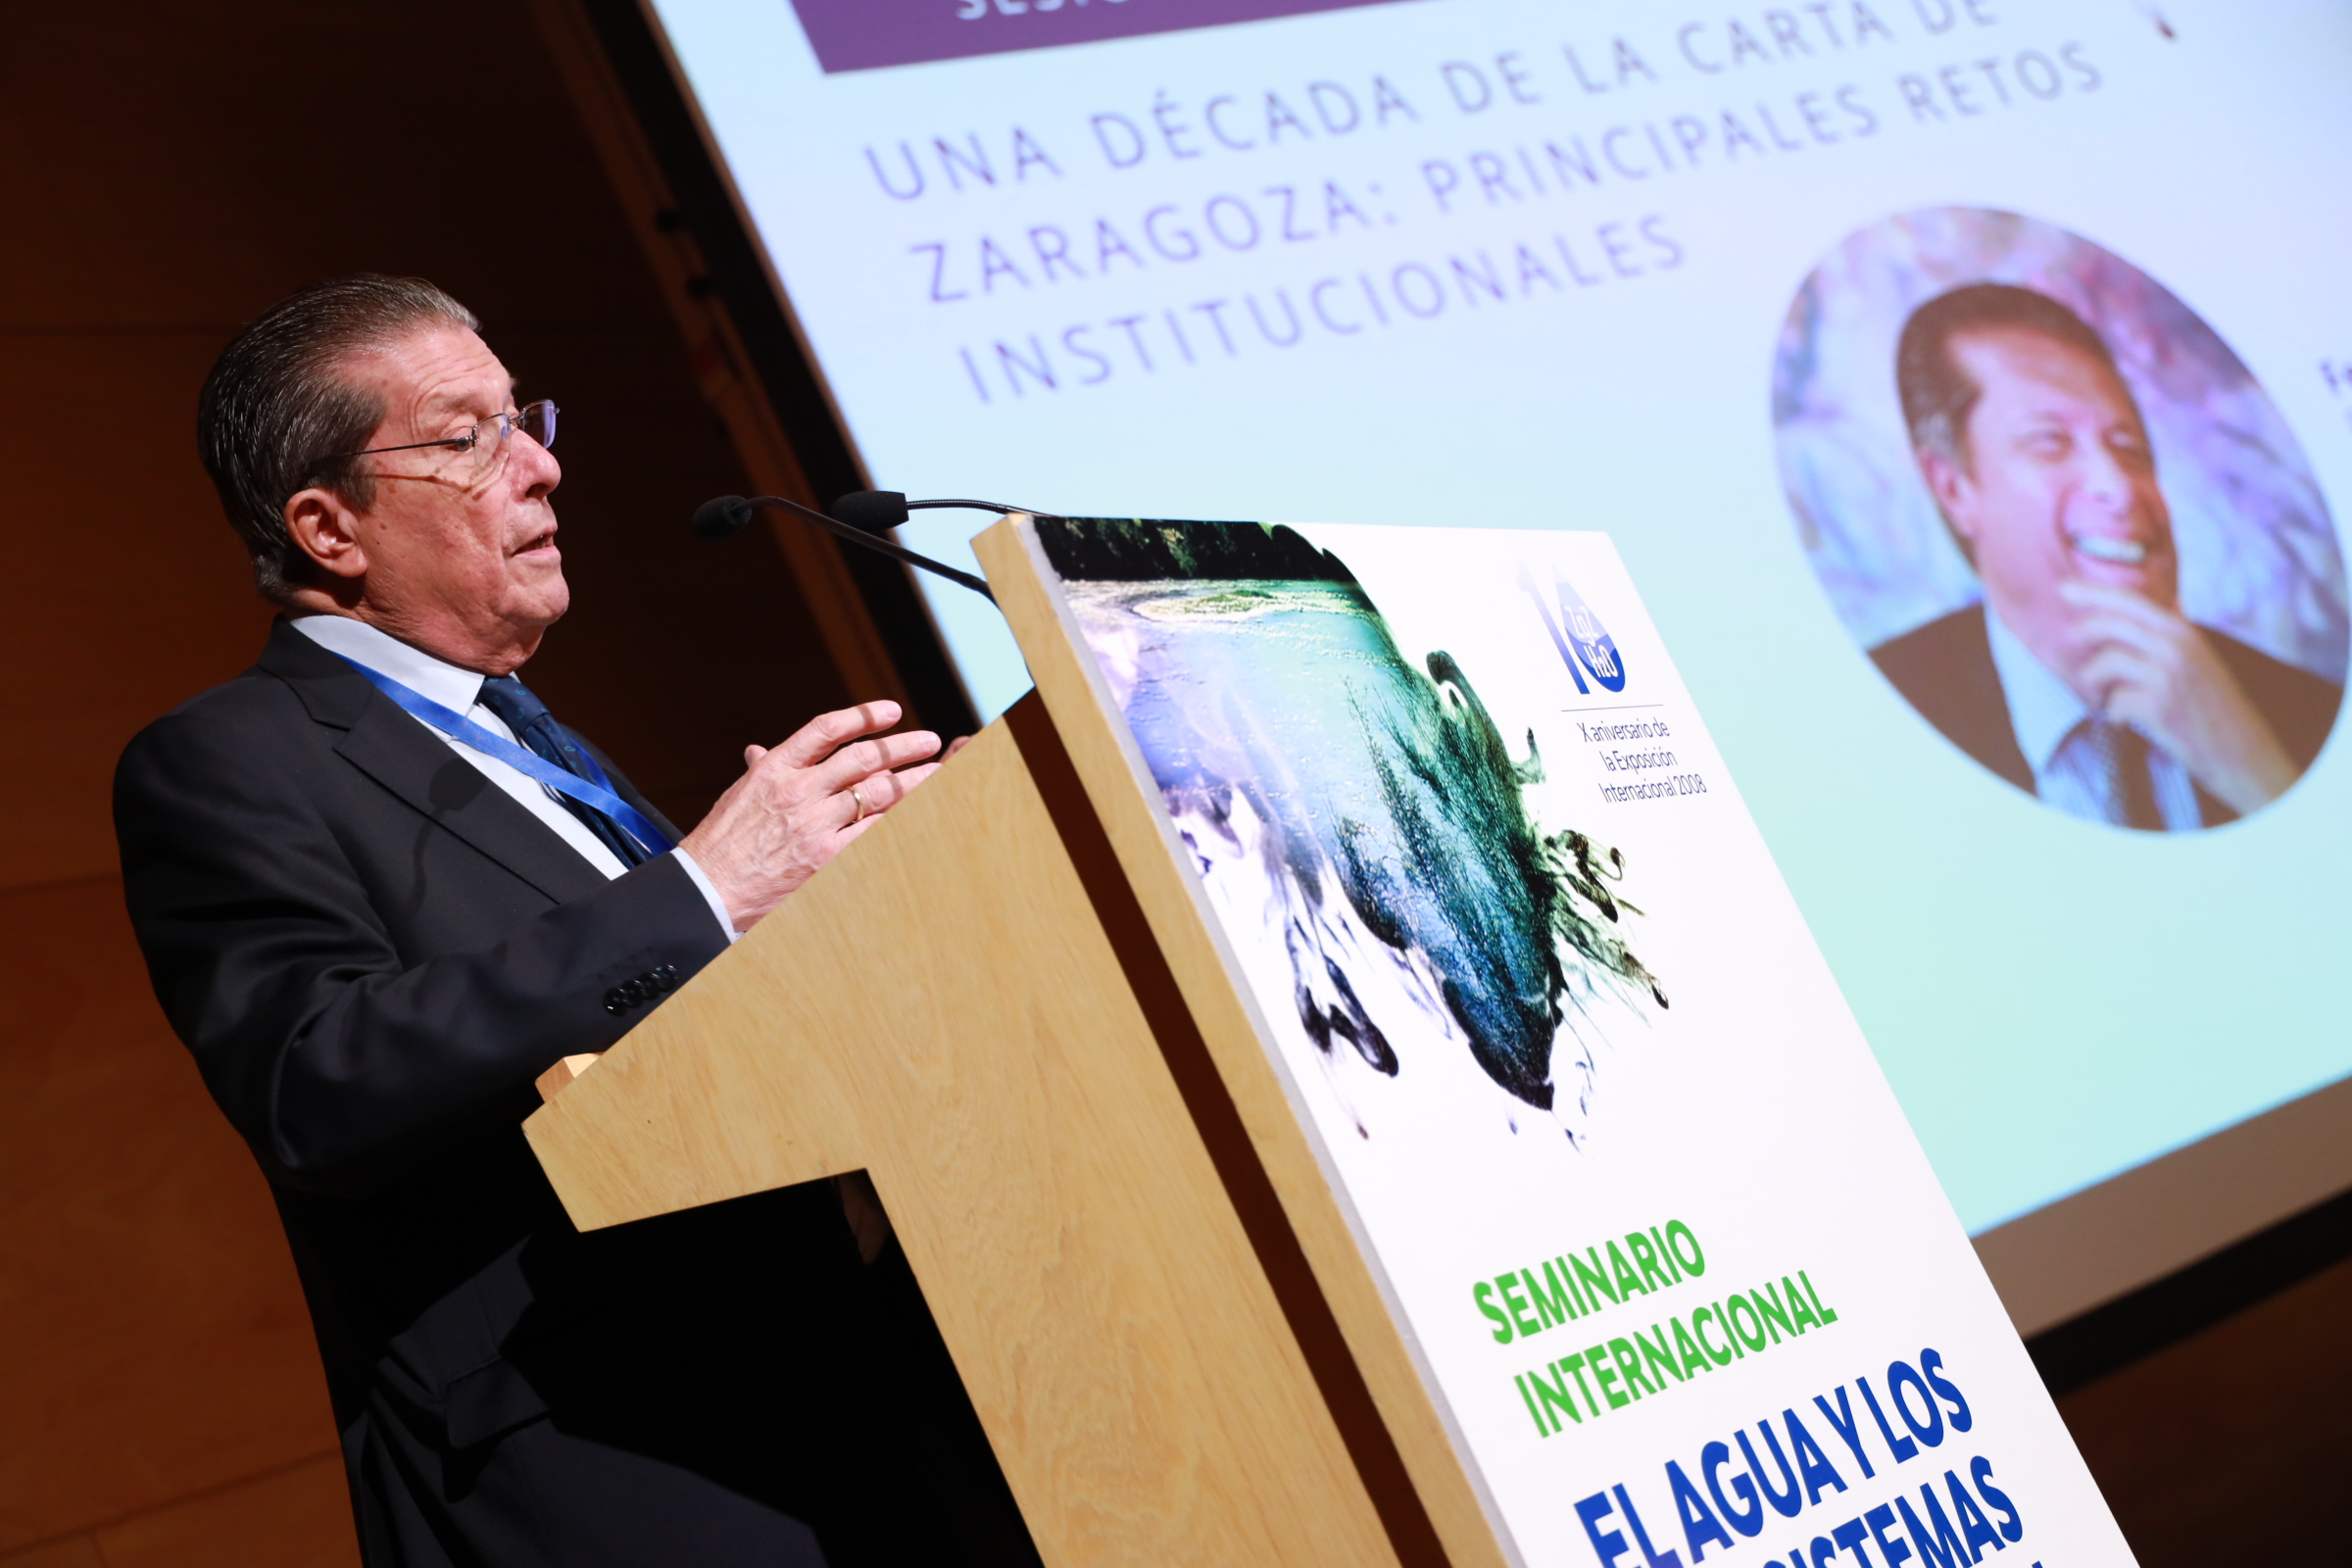 Mayor Zaragoza: «La Carta del agua ha pesado mucho en los avances sobre desarrollo sostenible»